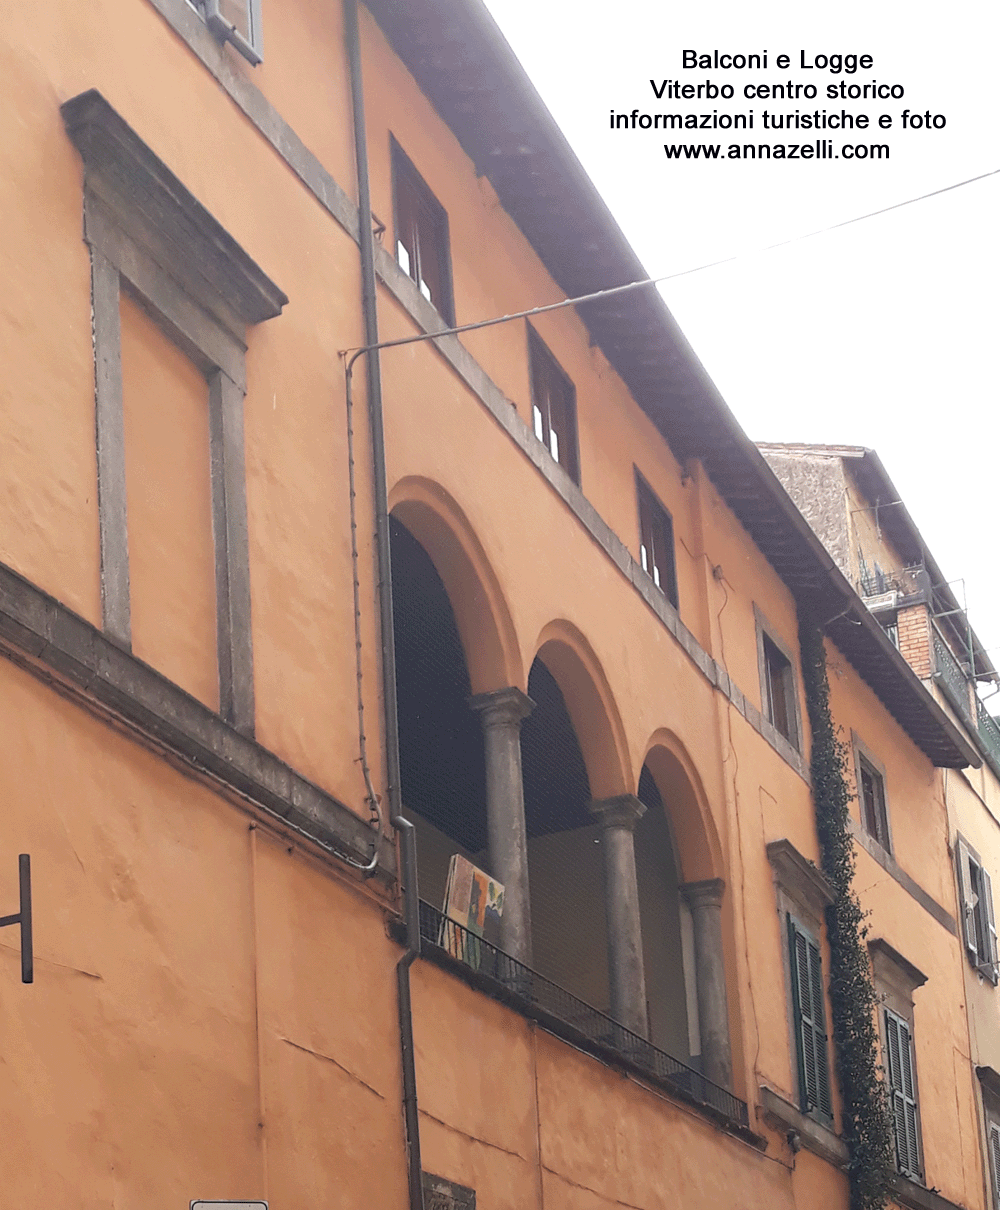 balconi e logge a viterbo centro storico info e foto anna zelli